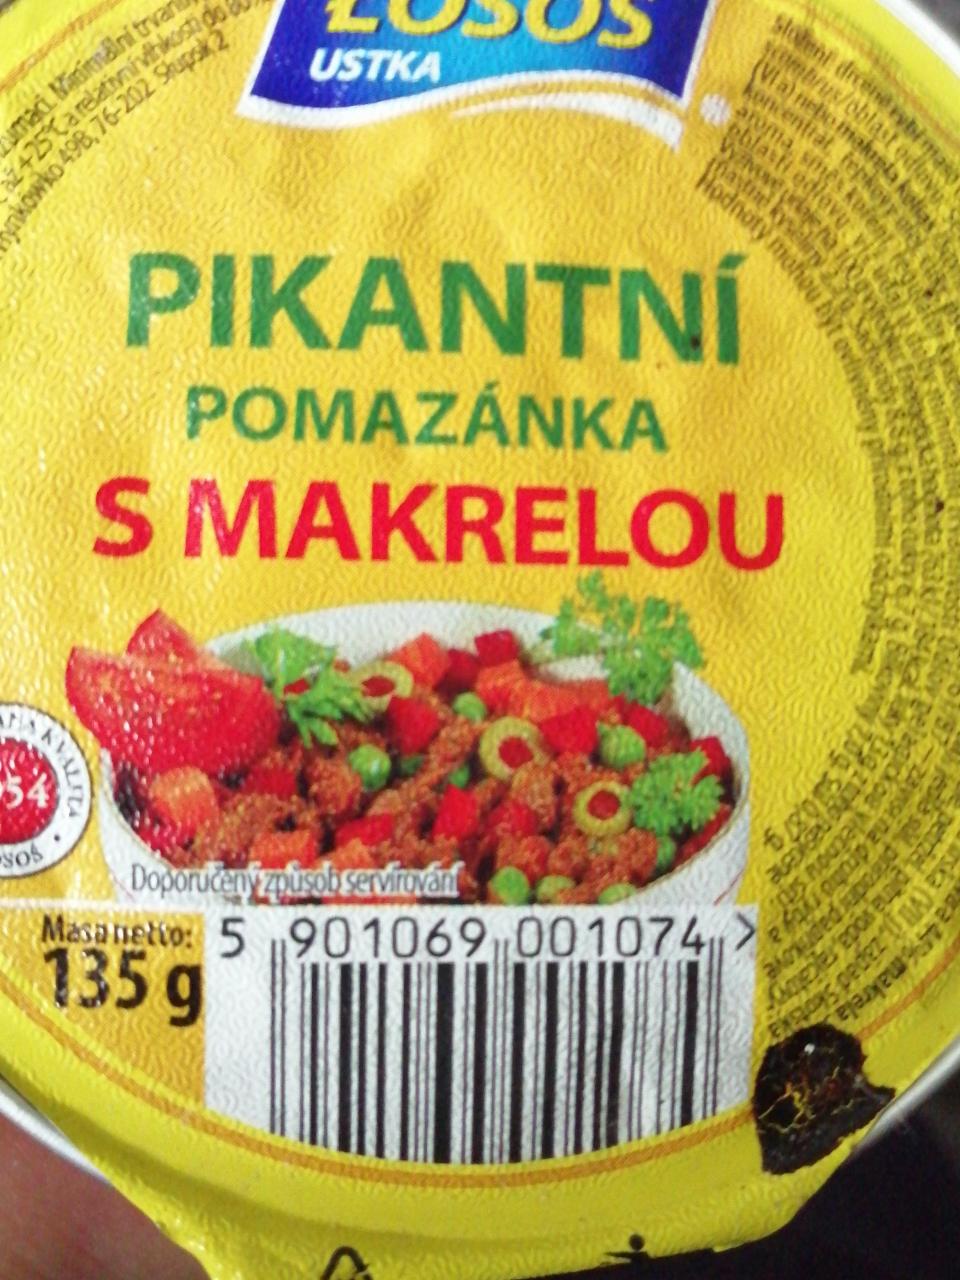 Fotografie - Pikantní pomazánka s makrelou Łosoś Ustka